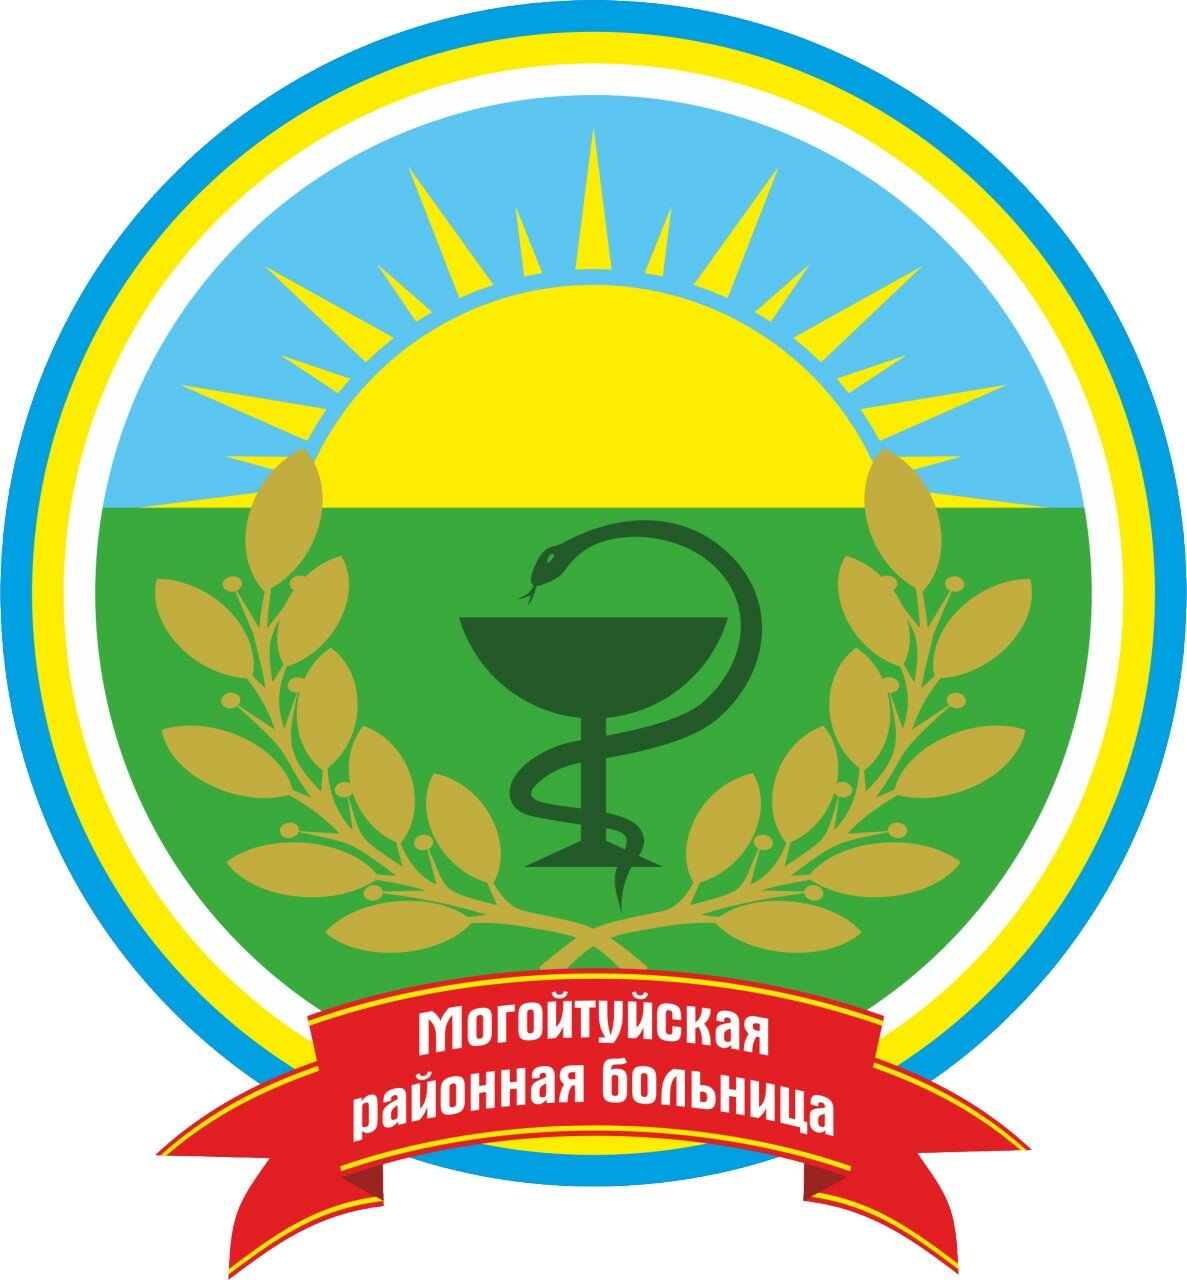 Государственное учреждение здравоохранения "Могойтуйская центральная районная больница"